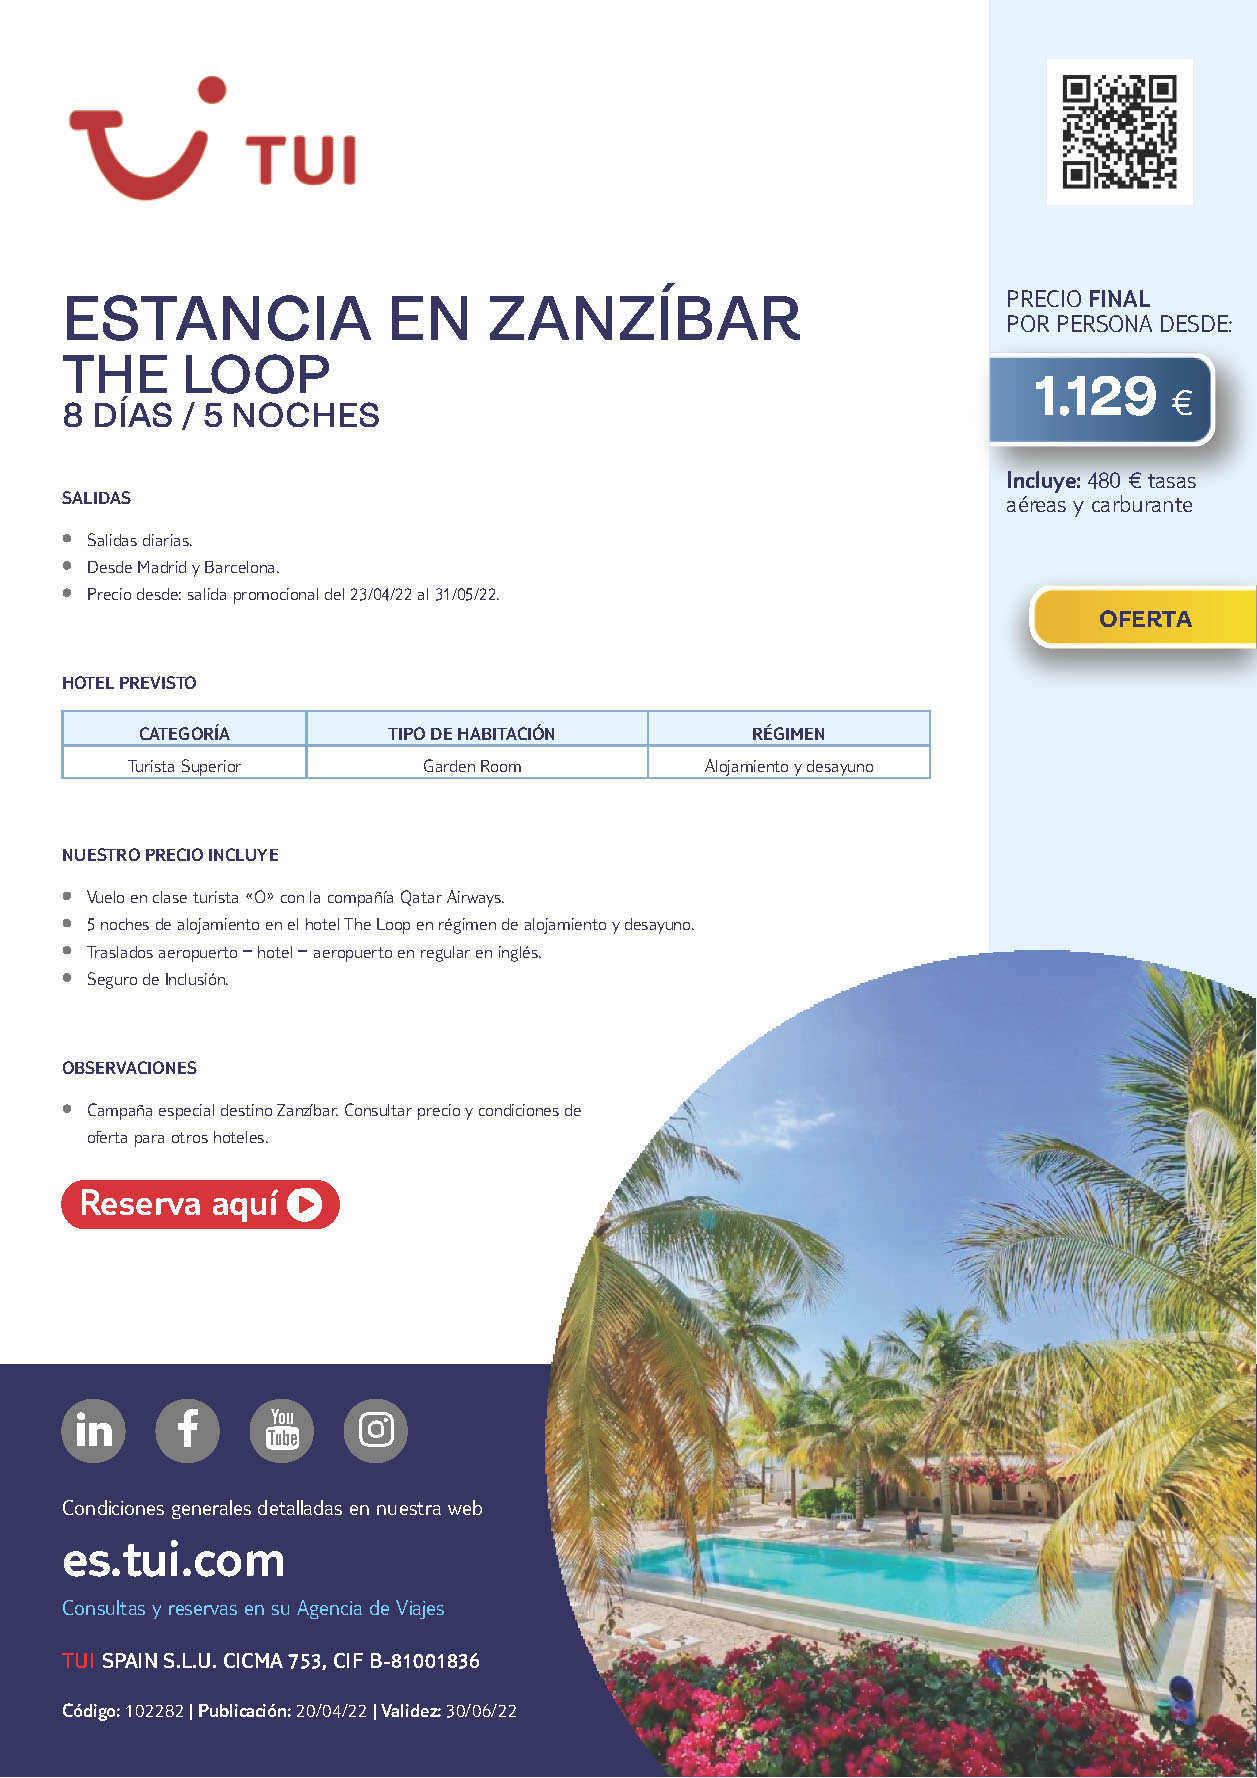 Oferta TUI Estancia en Zanzibar Tanzania 8 dias 5 noches Abril y Mayo 2022 salidas desde Madrid Barcelona vuelos Qatar Airways